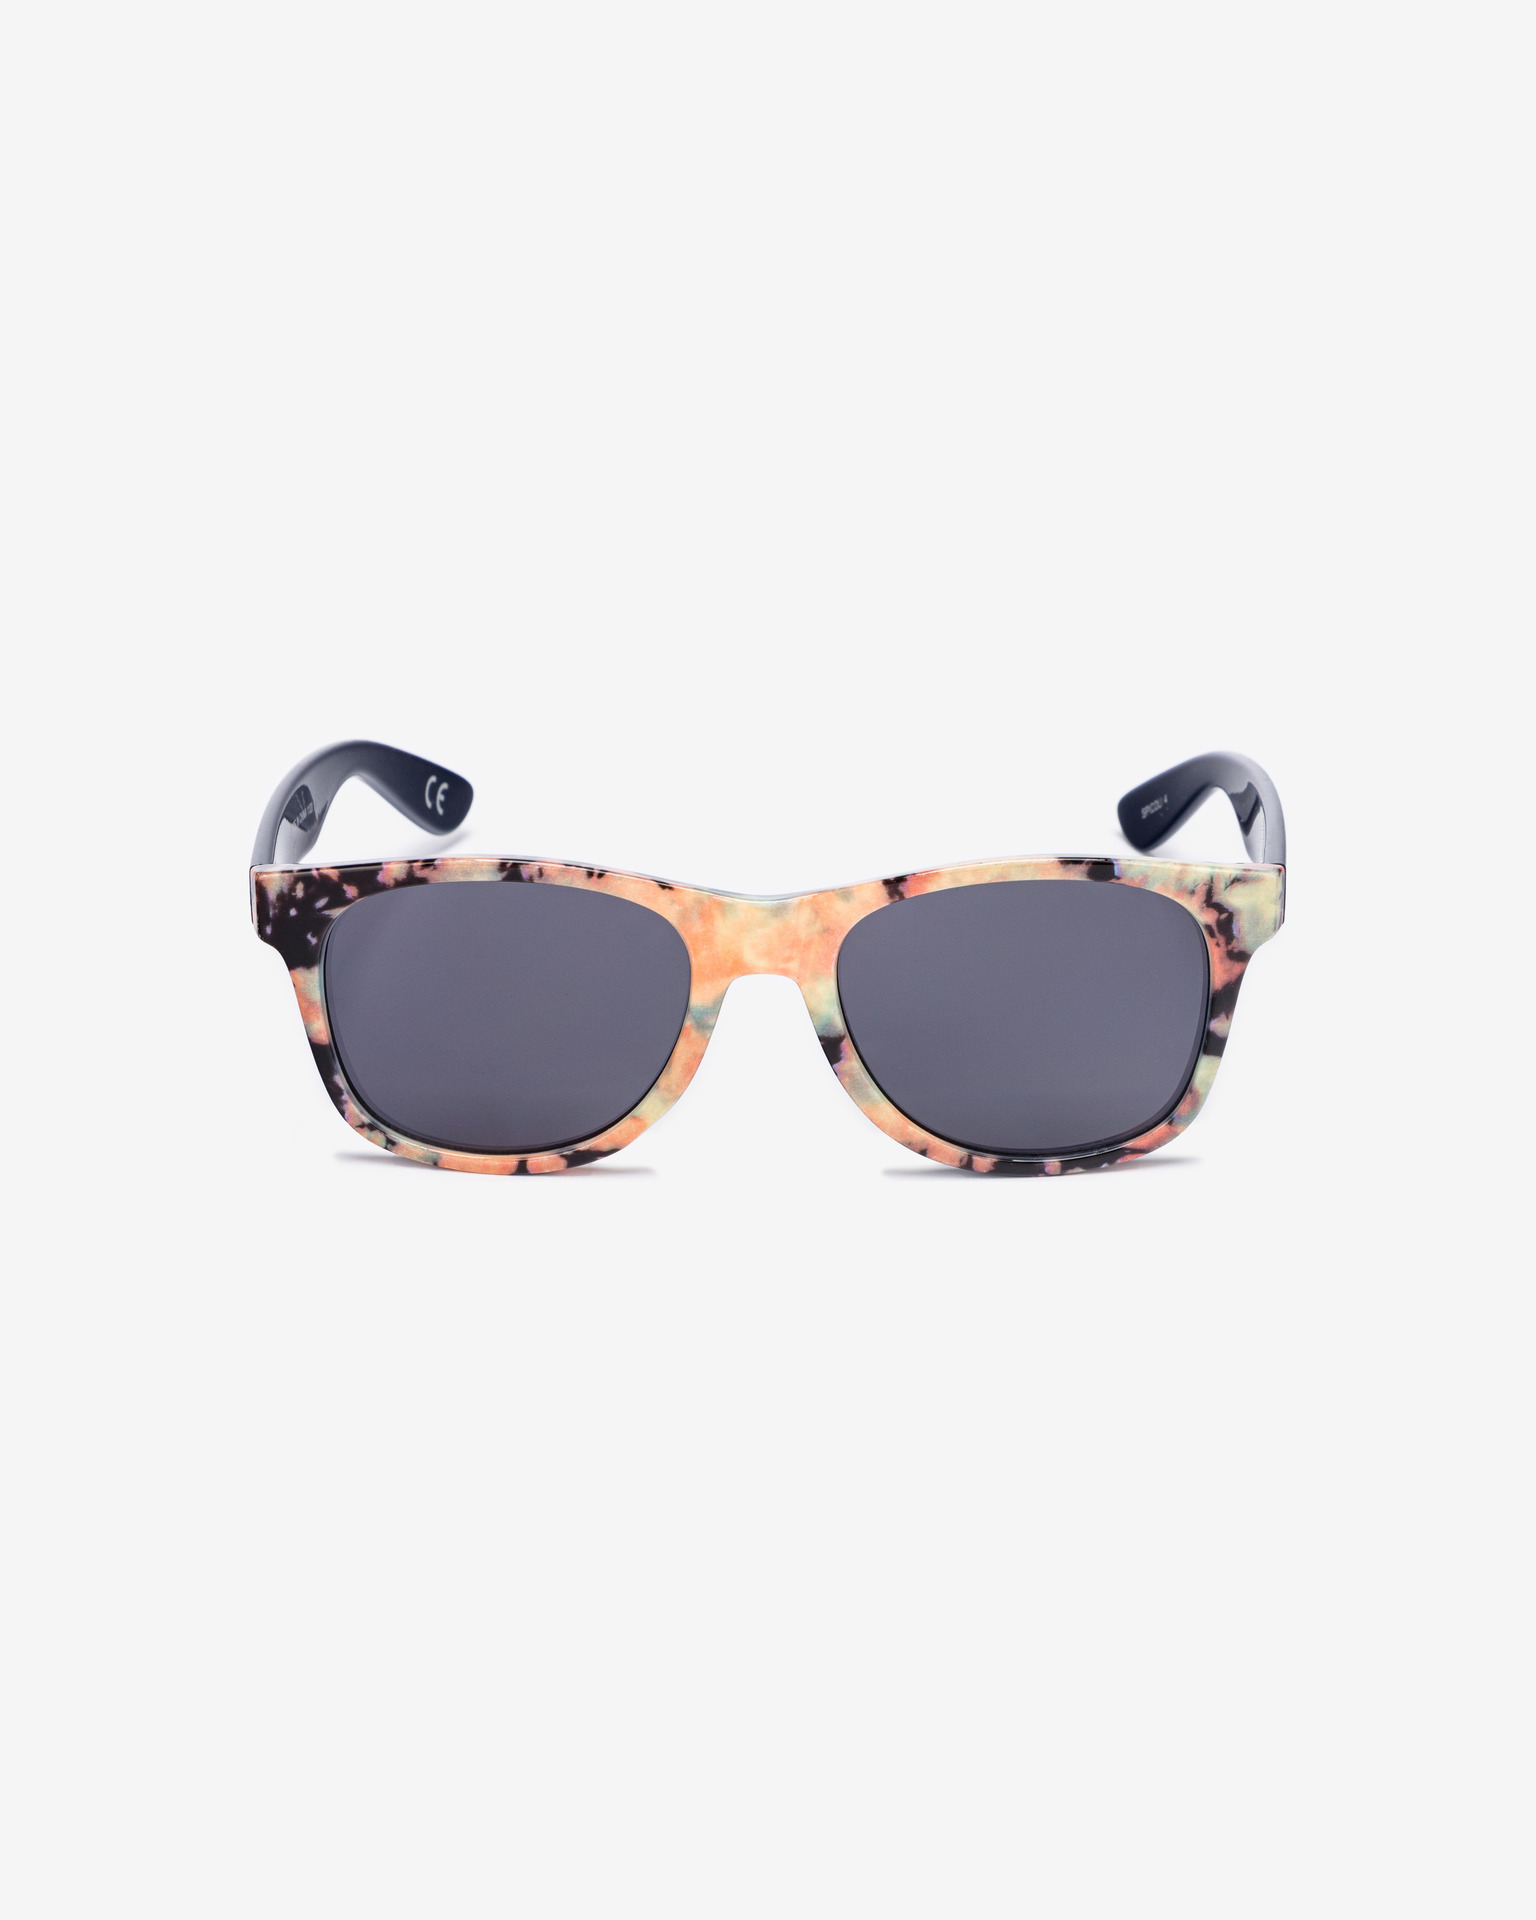 Vans - Spicoli 4 Sunglasses Shades